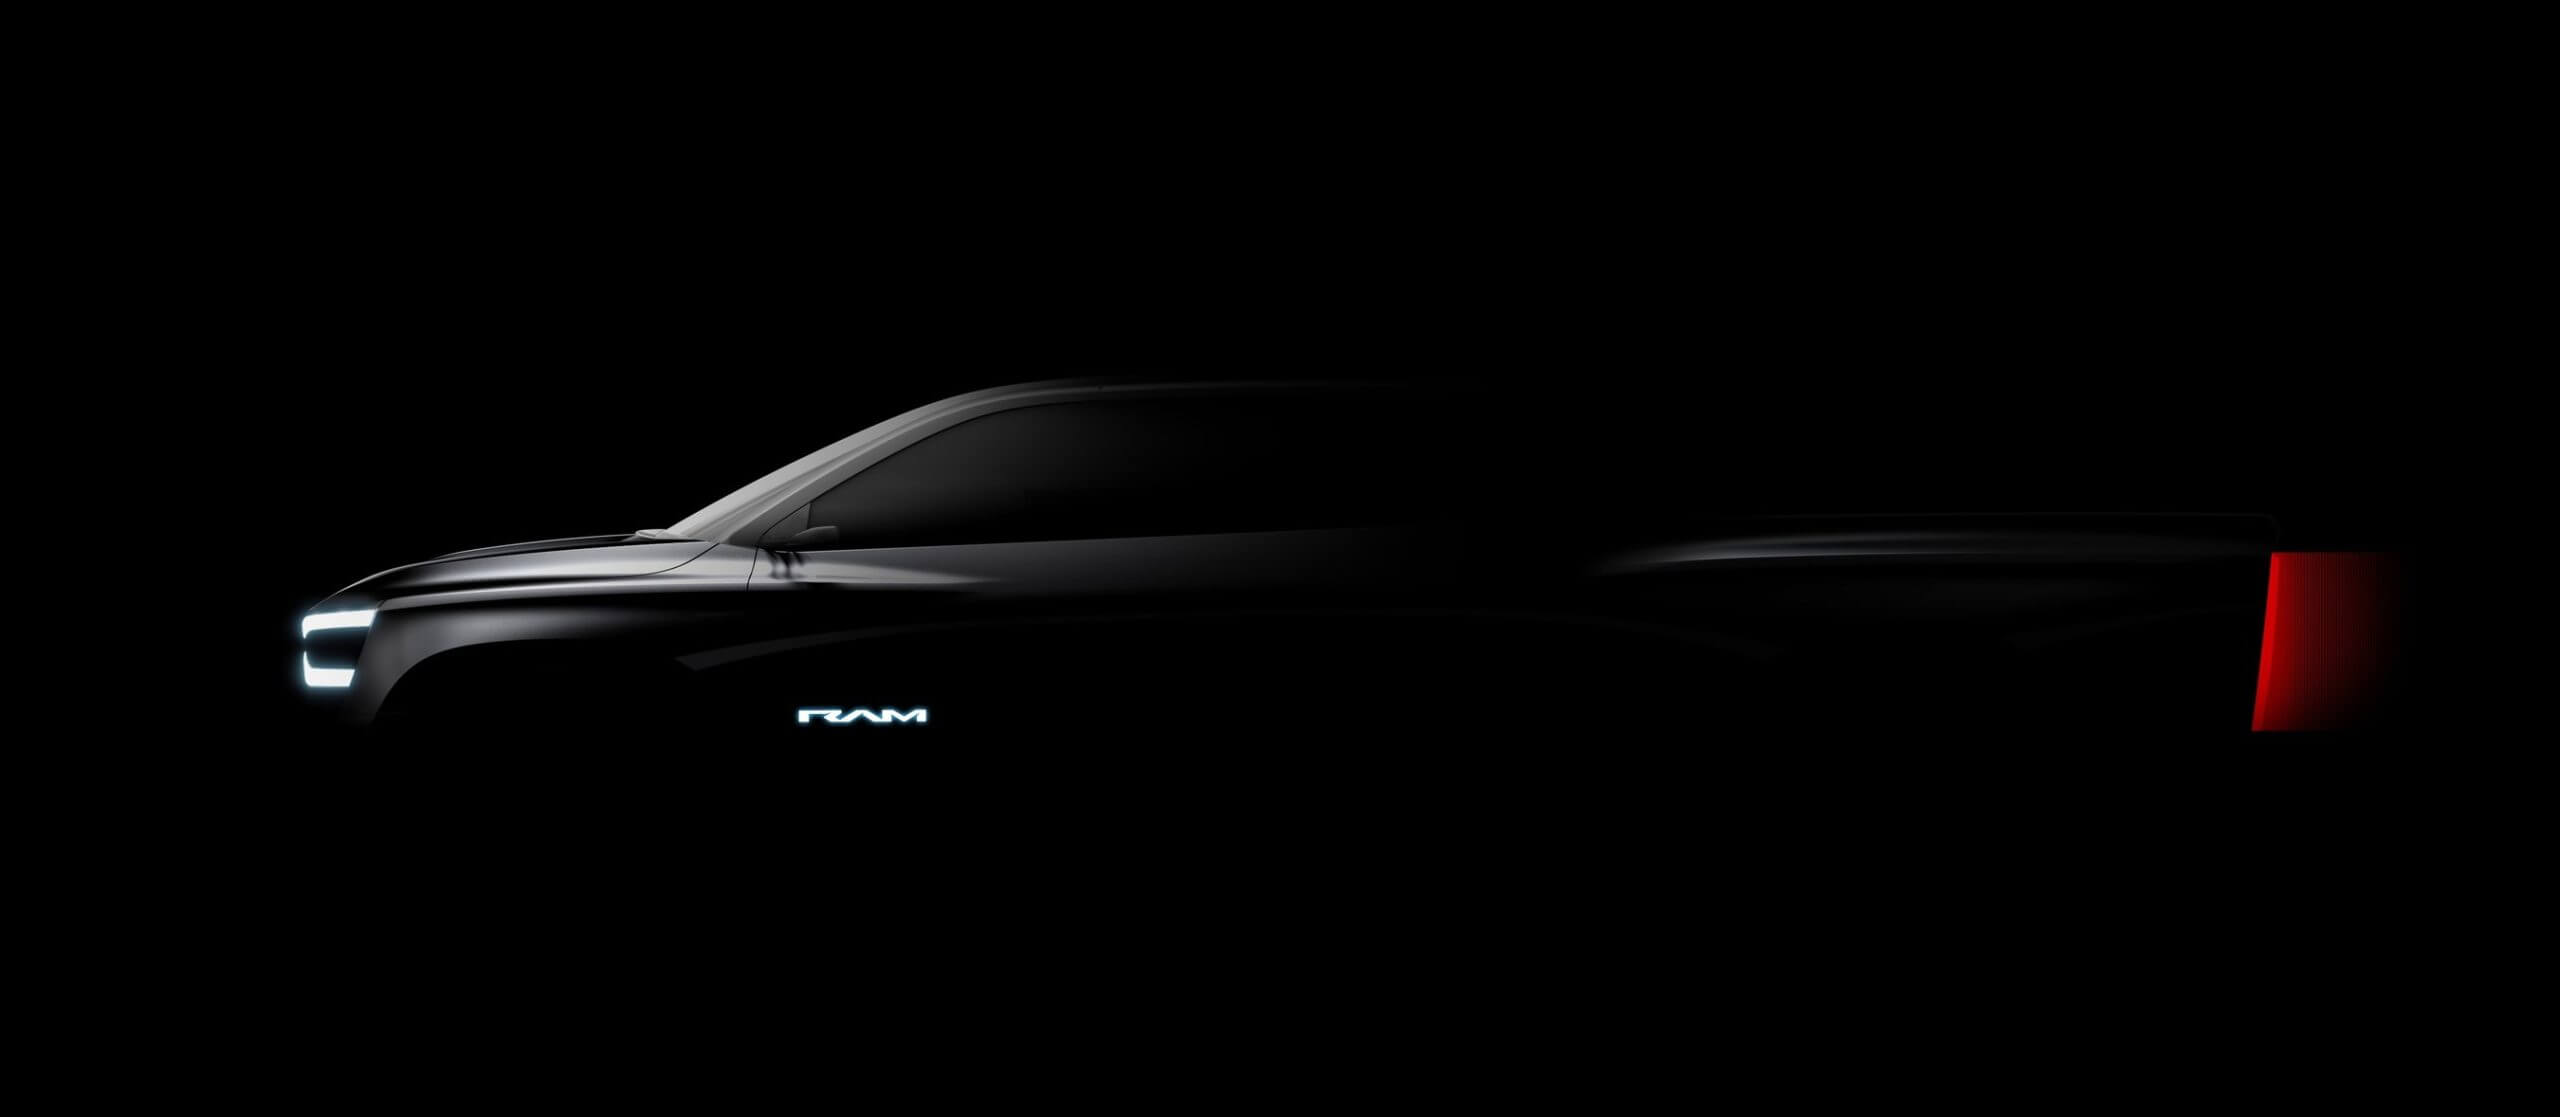 Dodge annonce la révélation de RAM Revolution et fait allusion à d’autres véhicules électriques